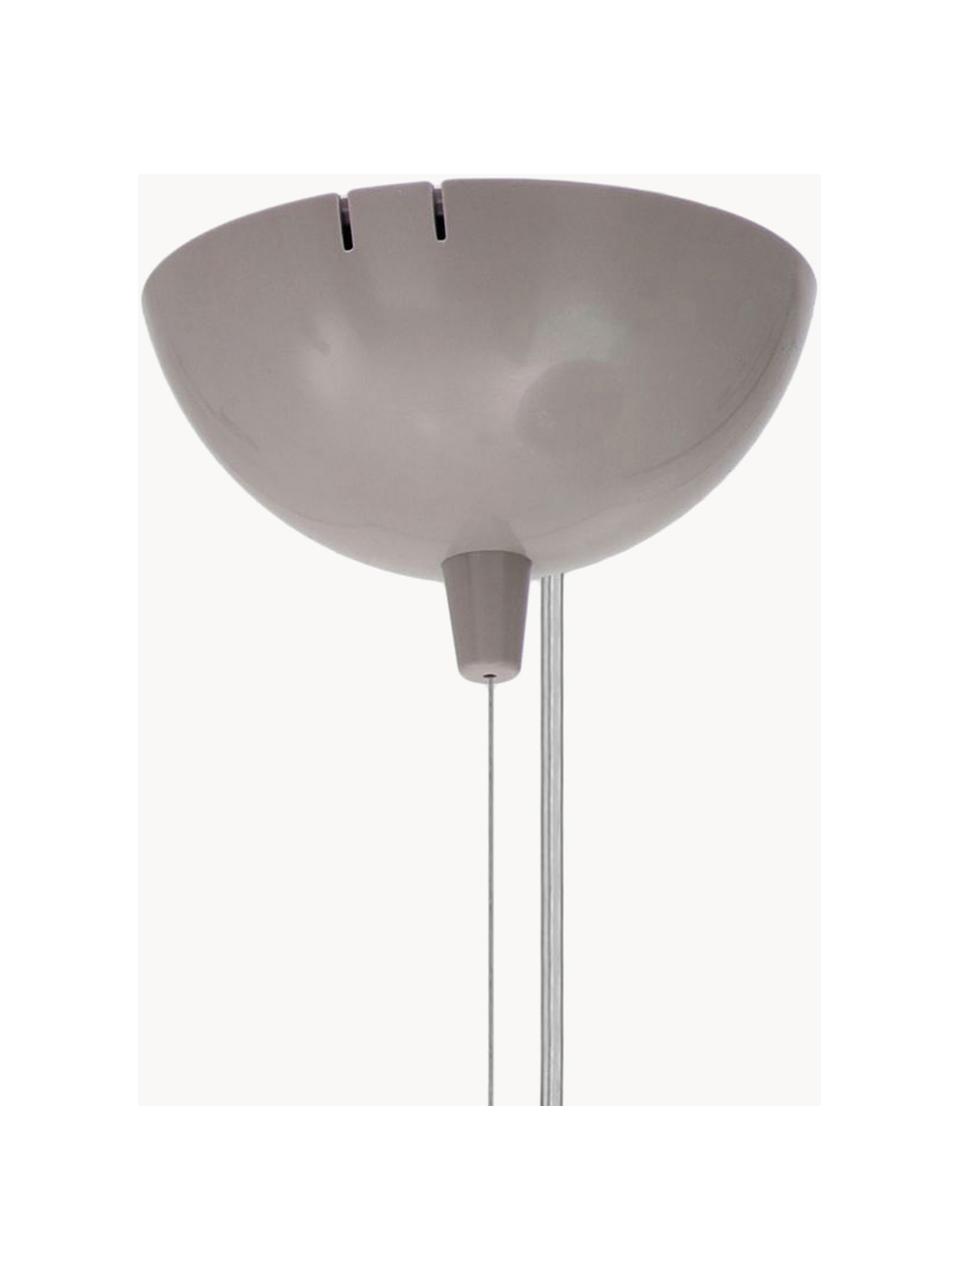 Lámpara de techo grande Bellissima, Plástico, Greige, Ø 50 x Al 41 cm